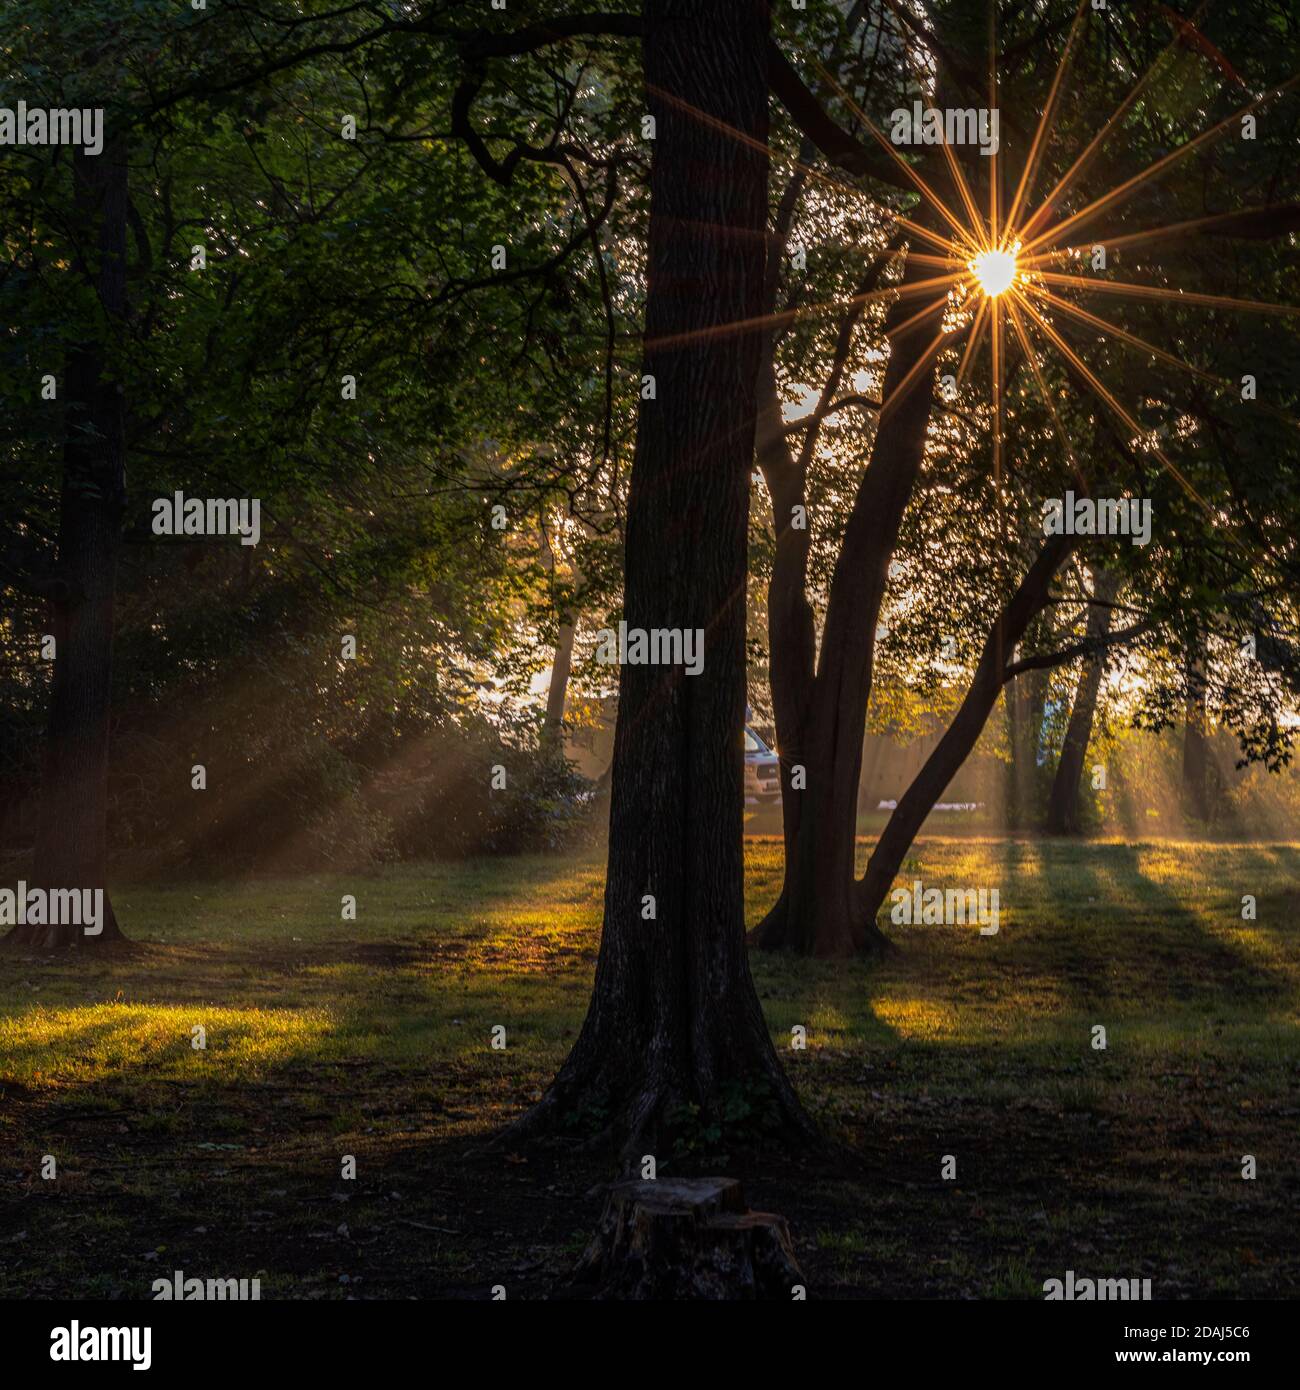 Morgens zum Sonnenaufgang im Park, grüne Bäume und Sonnenstrahlen durch die Äste, Leipzig, Clara-Zetkin-Park Stock Photo